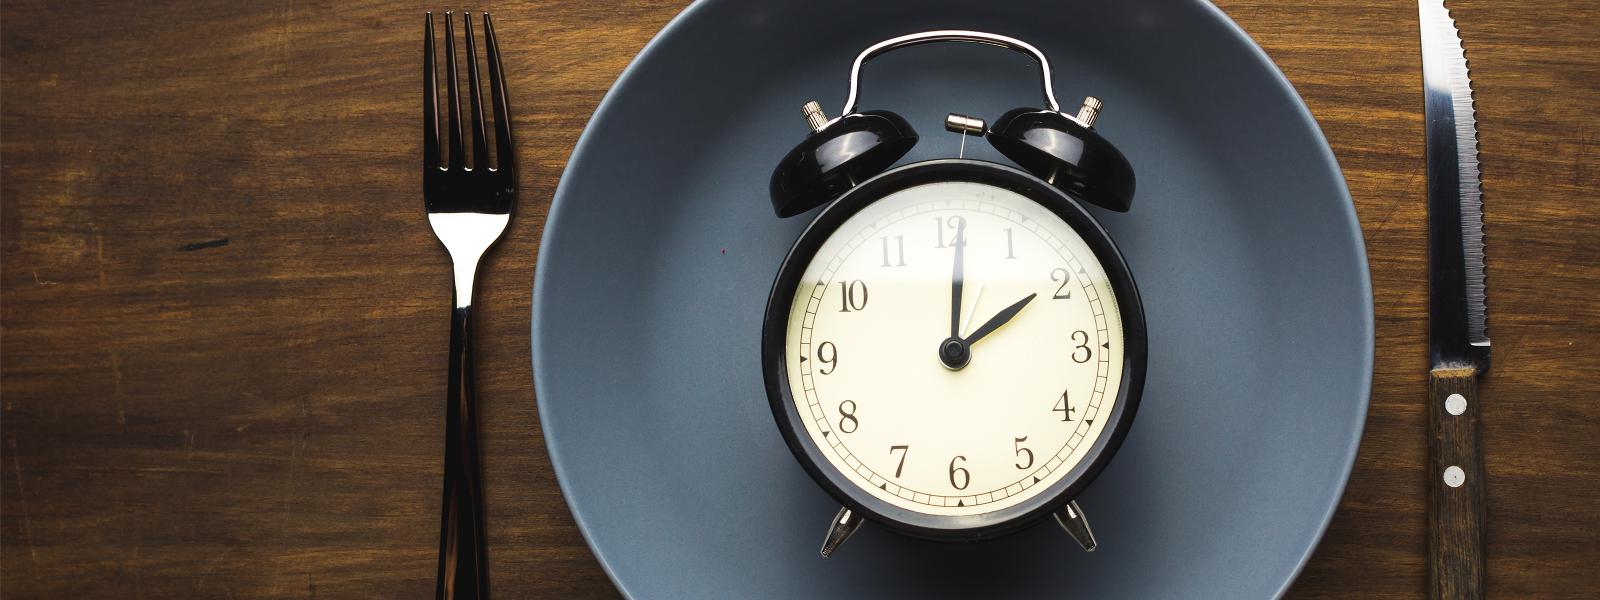 Clock representing fasting